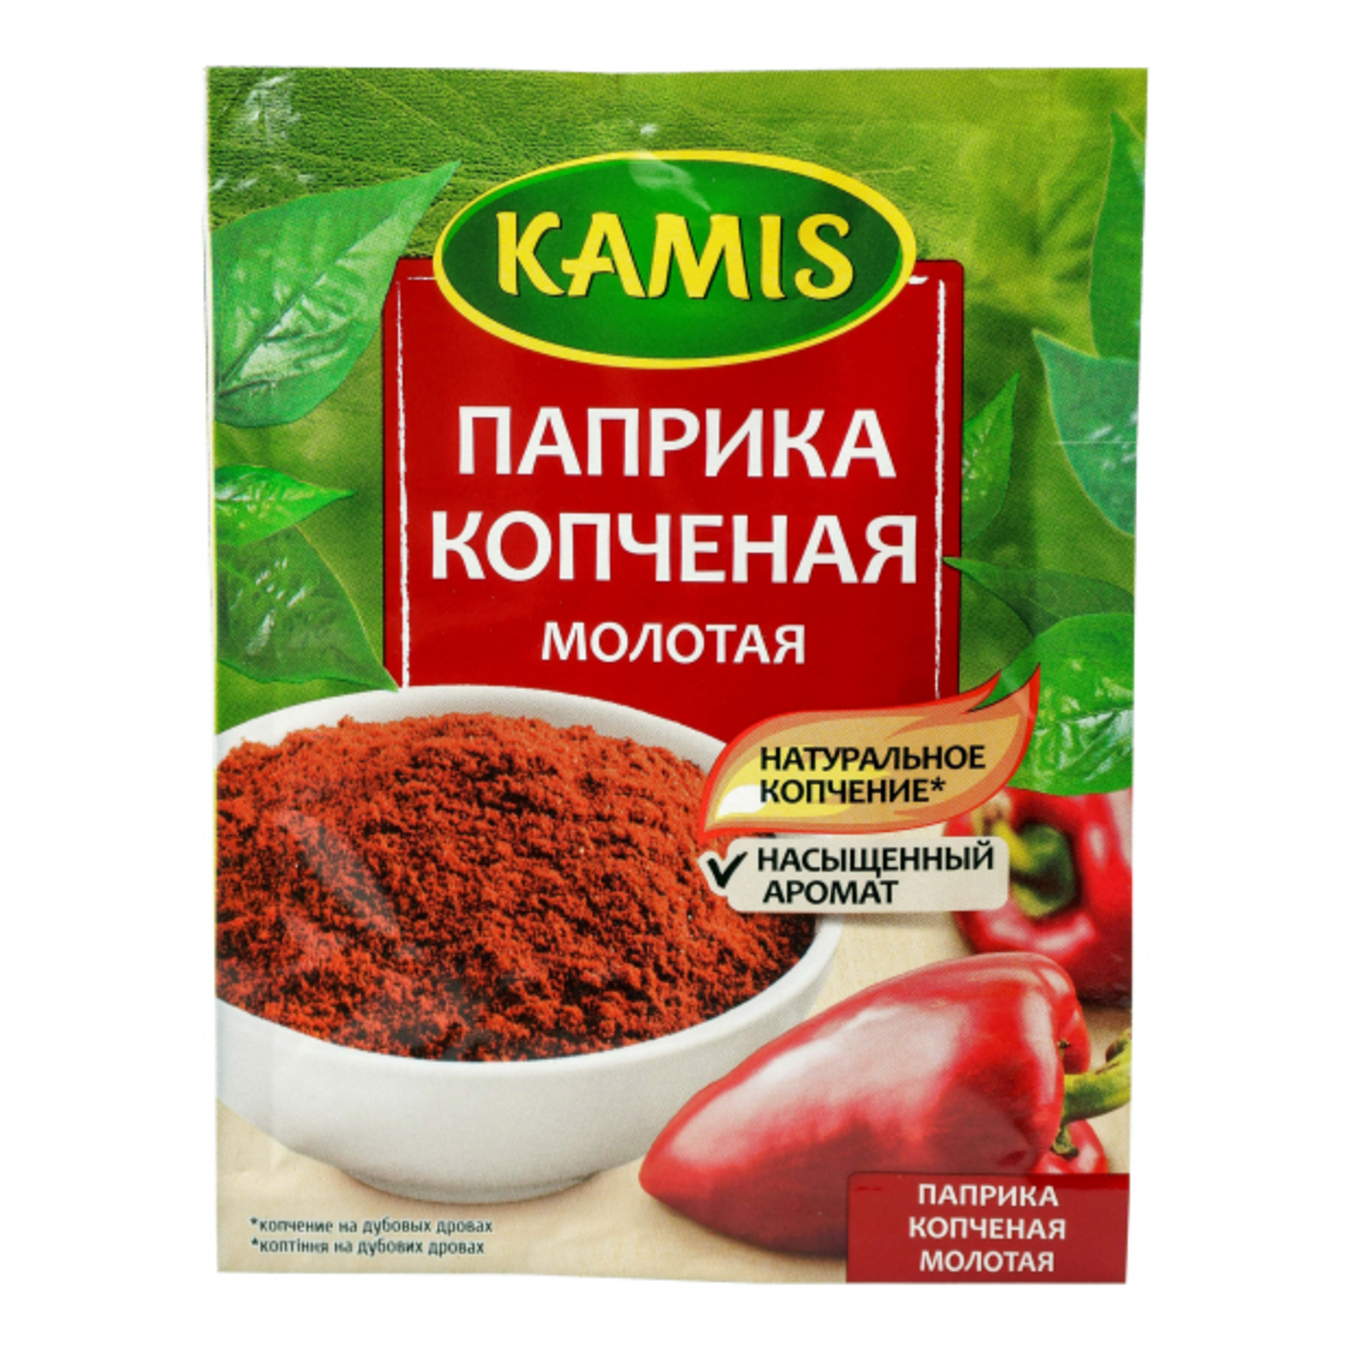 Kamis Smoked Ground Paprika Spice 15g